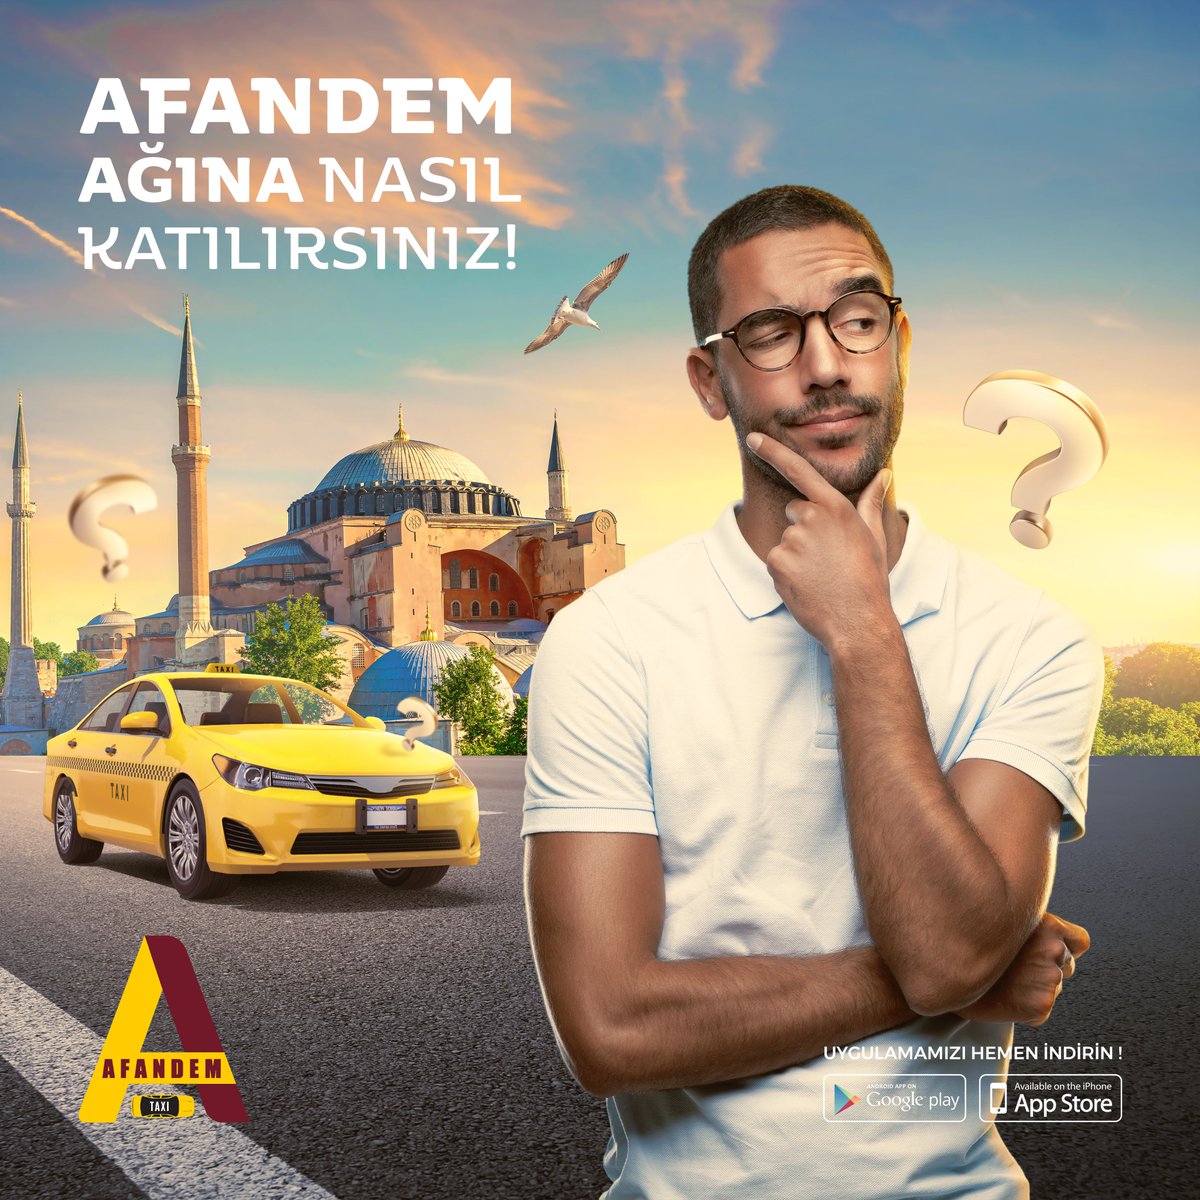 Afandem Ağına nasıl katılırsınız!

Sadece tıklayın ve Ağımıza katılın !!! 
Müşterileri olarak sizi seçmelerine izin verin

#afandemtaksi #privatetaxi #taxi #istanbul